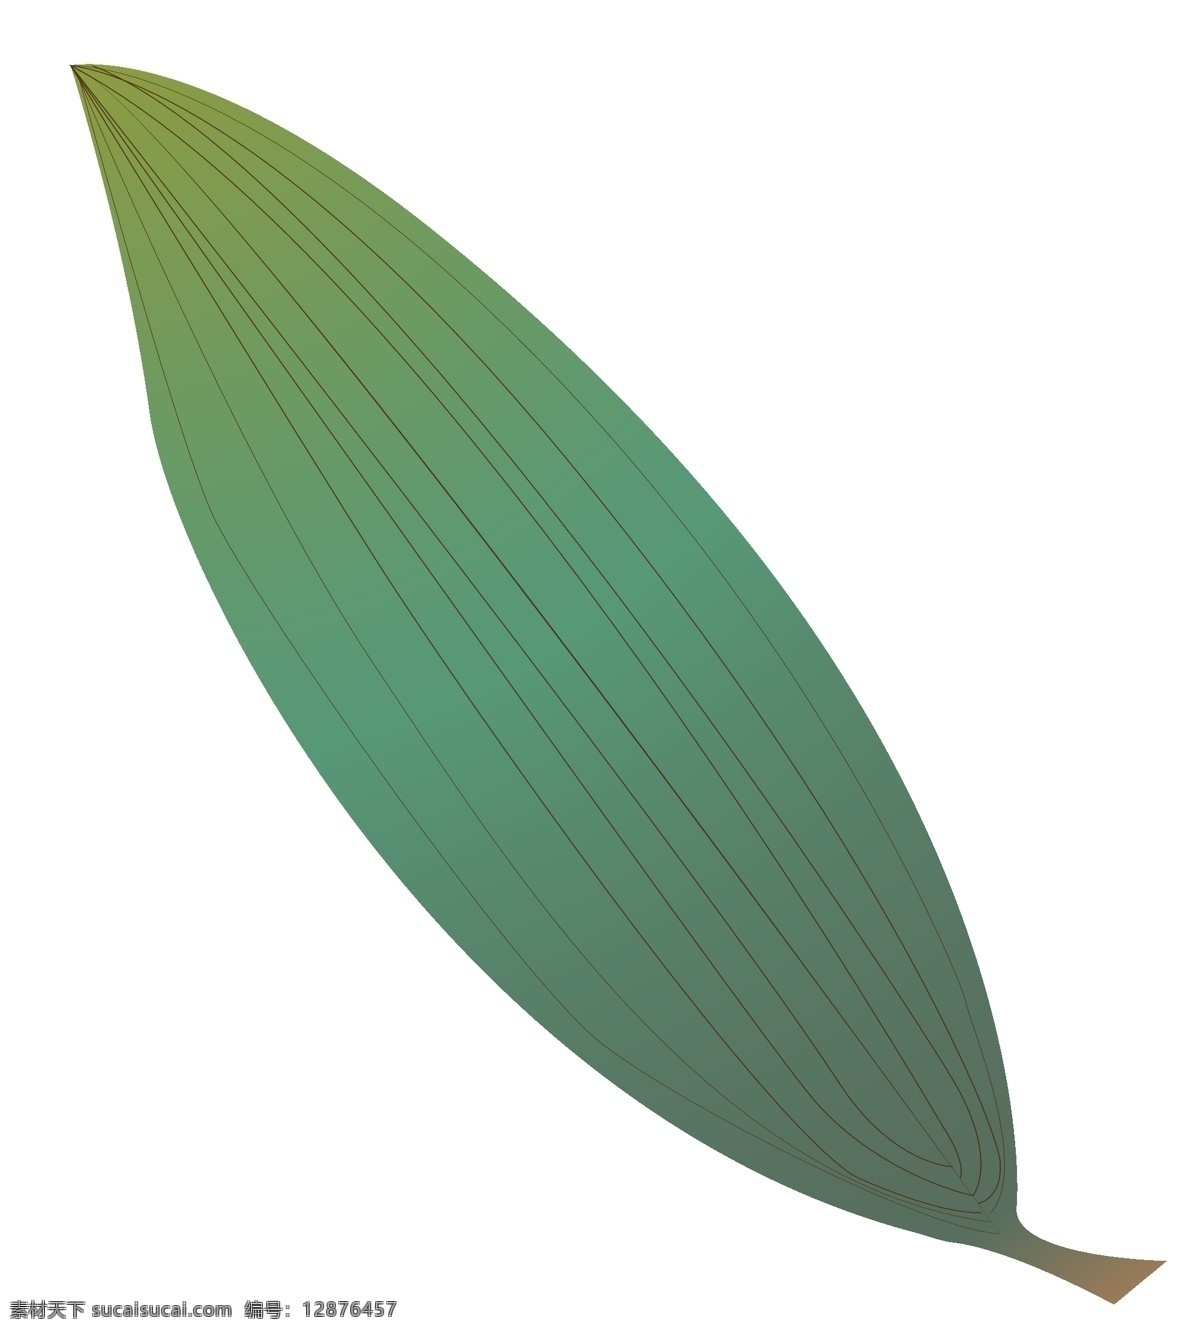 细长 绿色 叶子 插画 竹子的叶子 卡通插画 叶子插画 树叶插画 绿叶插画 植物叶子 细长的叶子